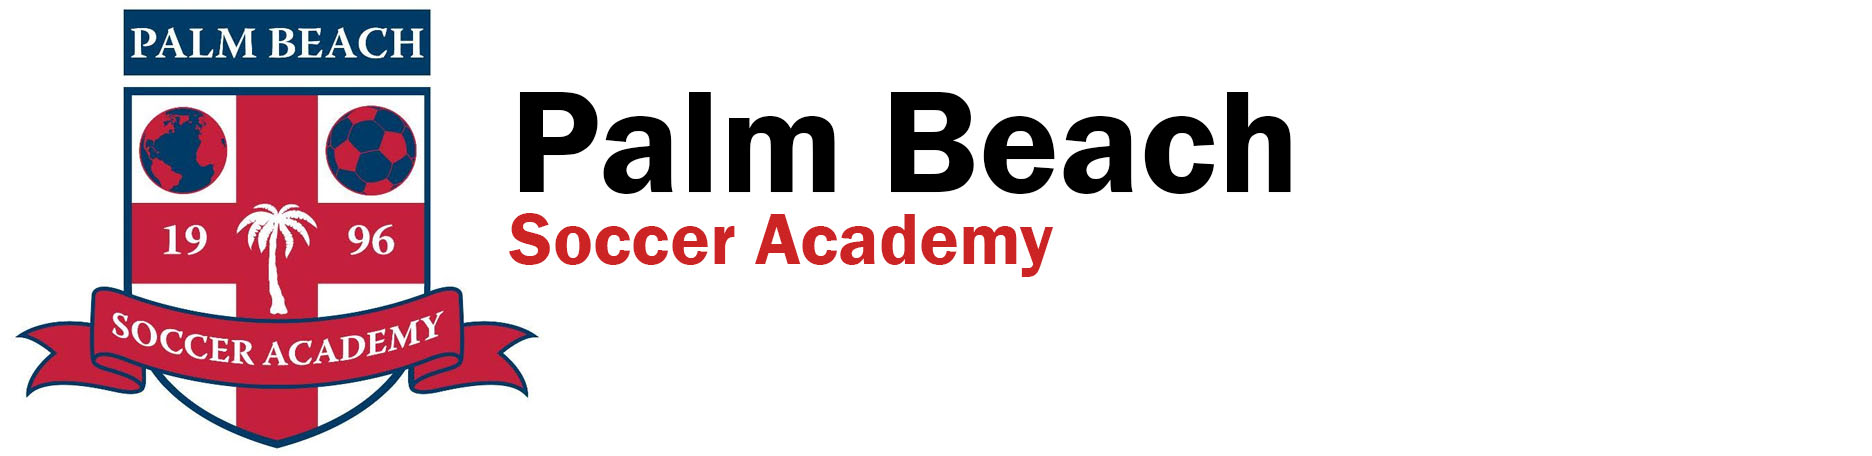 Palm Beach Soccer Academy